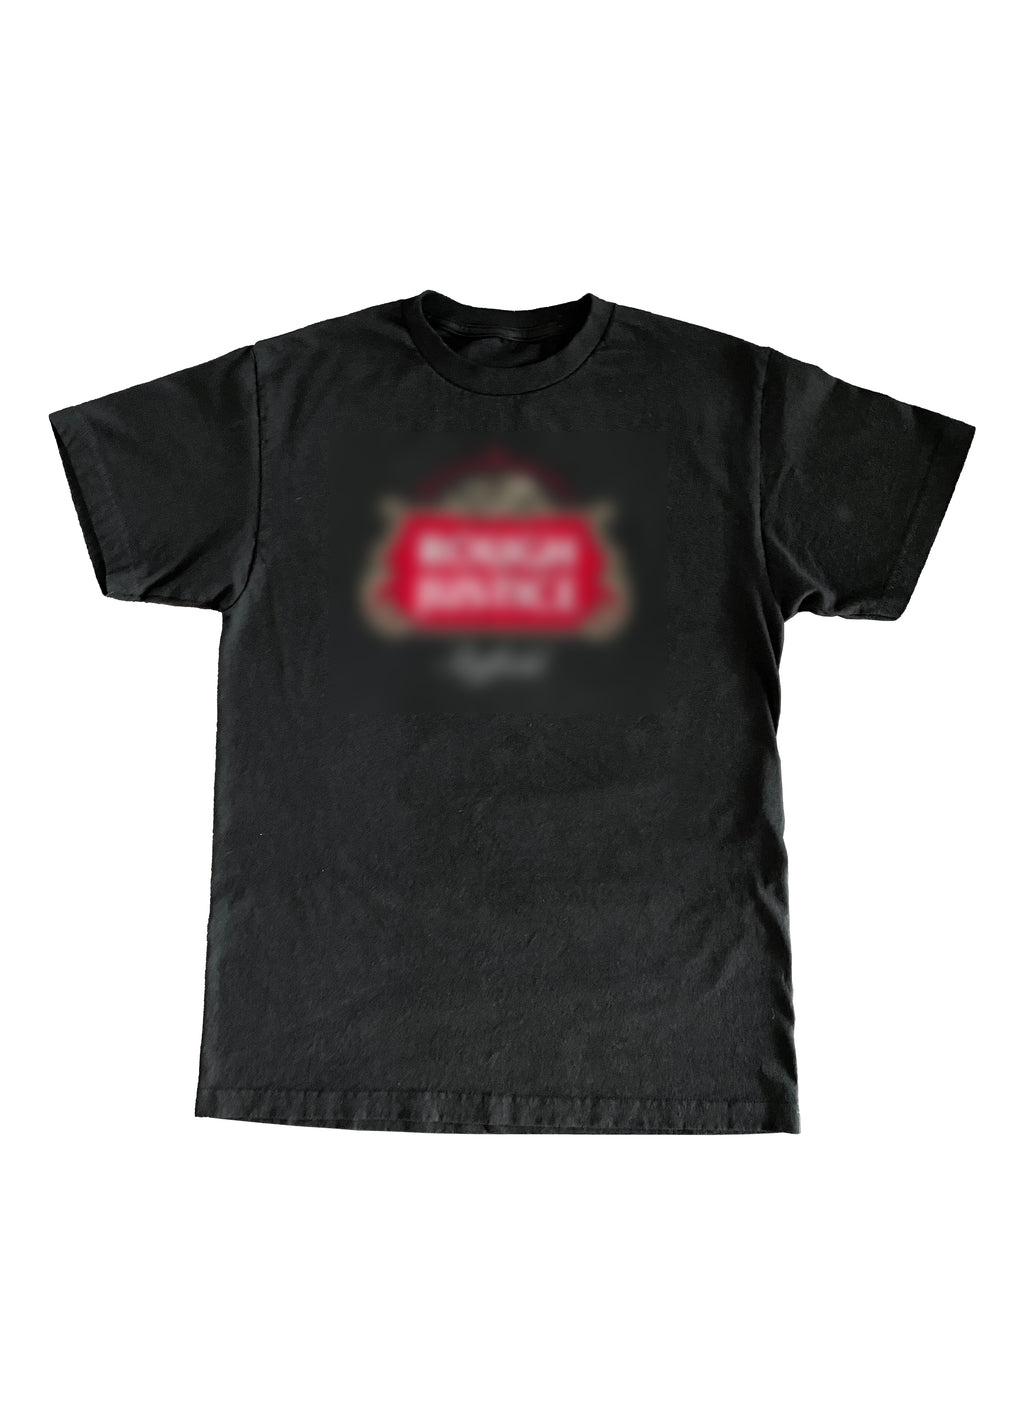 Rough Justice Beer Garden T-Shirt